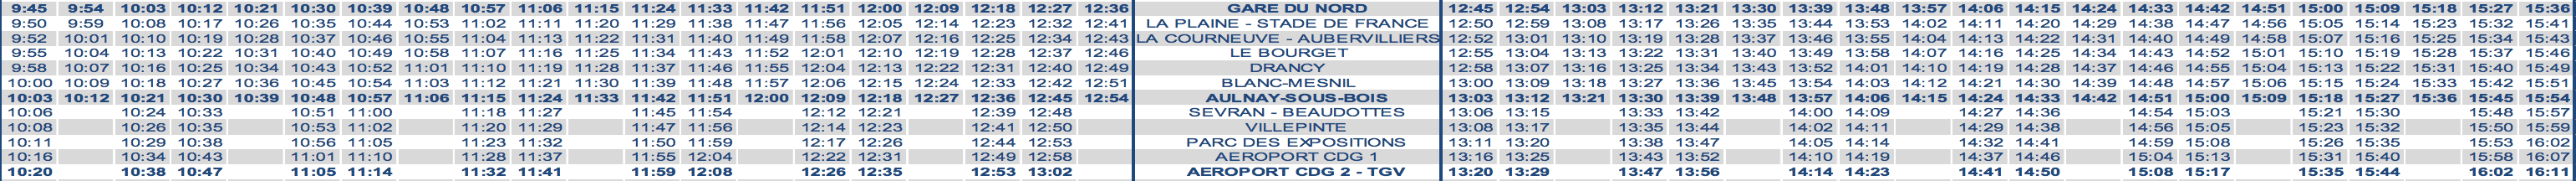 RER B Train Timetable Paris to CDG Morning Weekend 2020 Strike